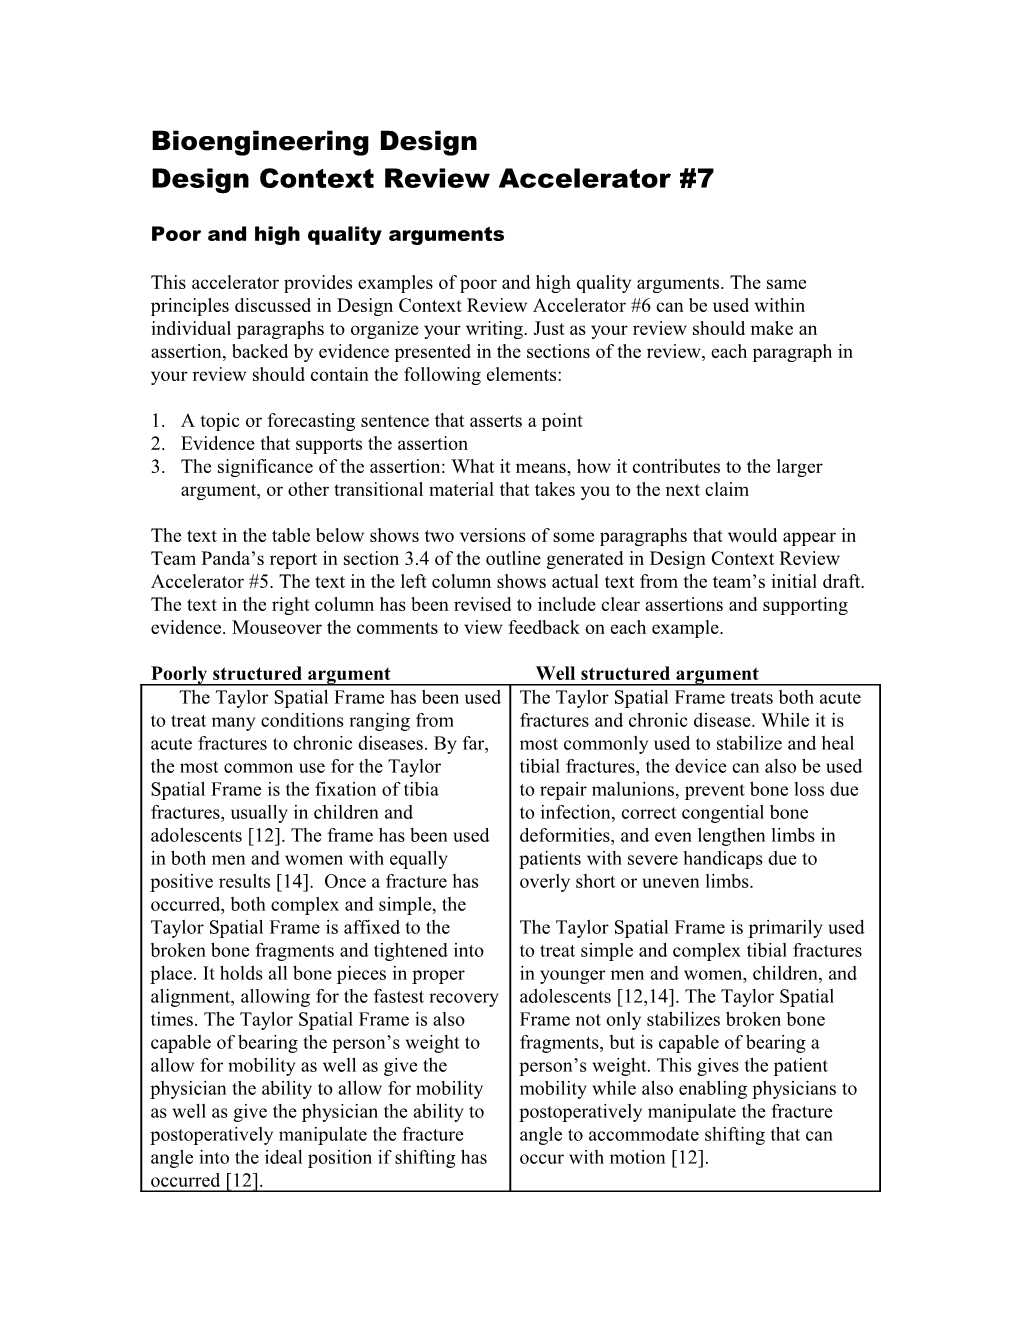 Design Context Review Accelerator #7